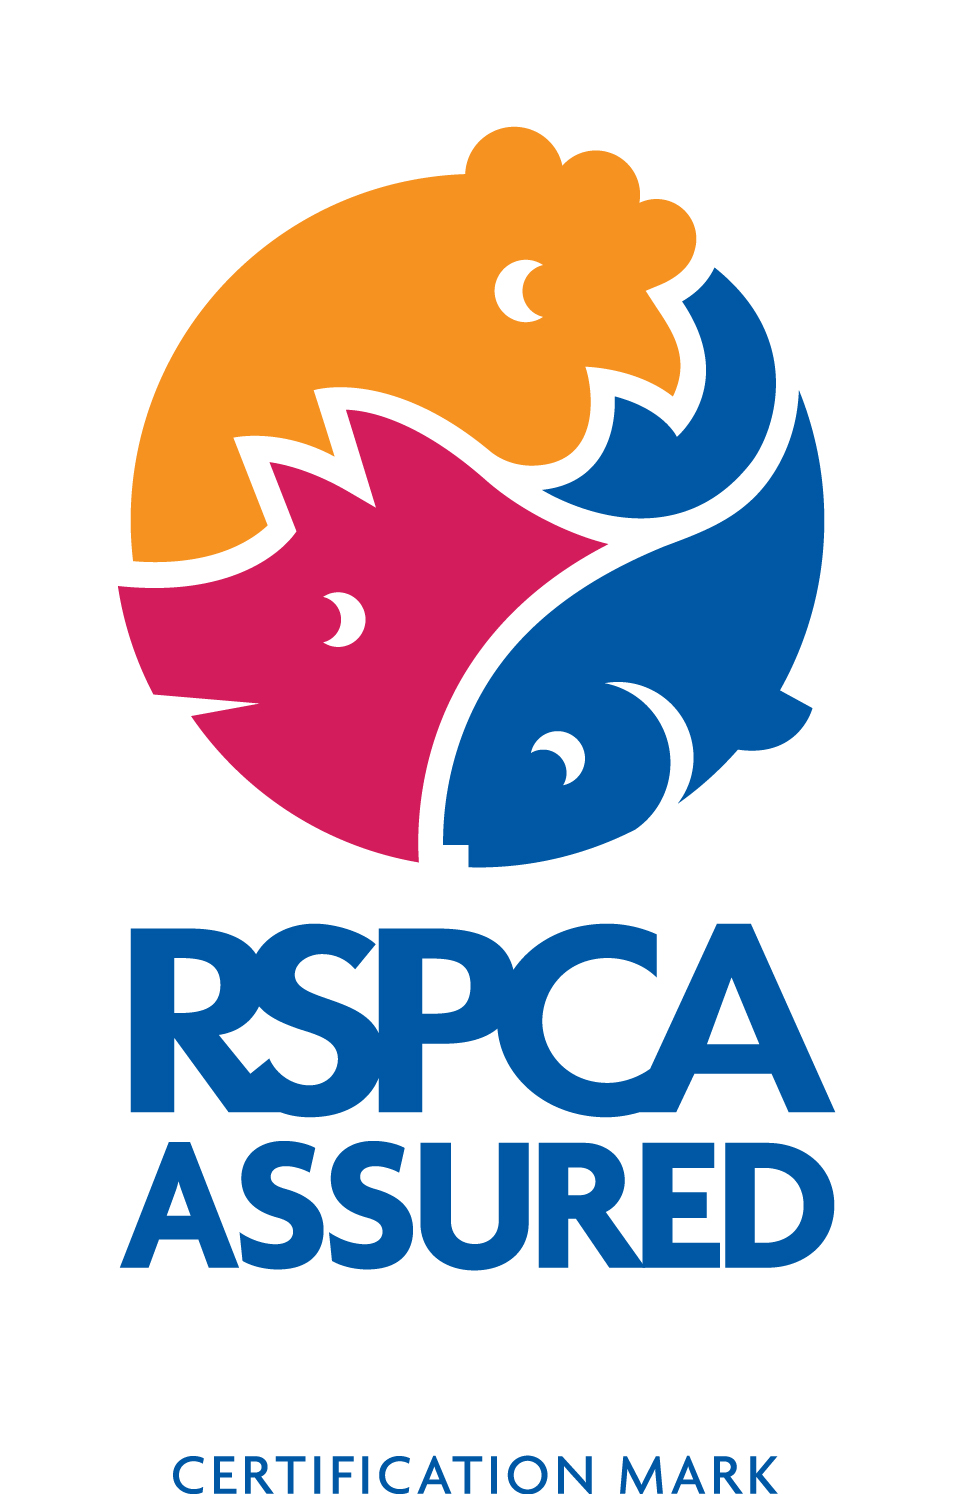 RSPCA Assured logo